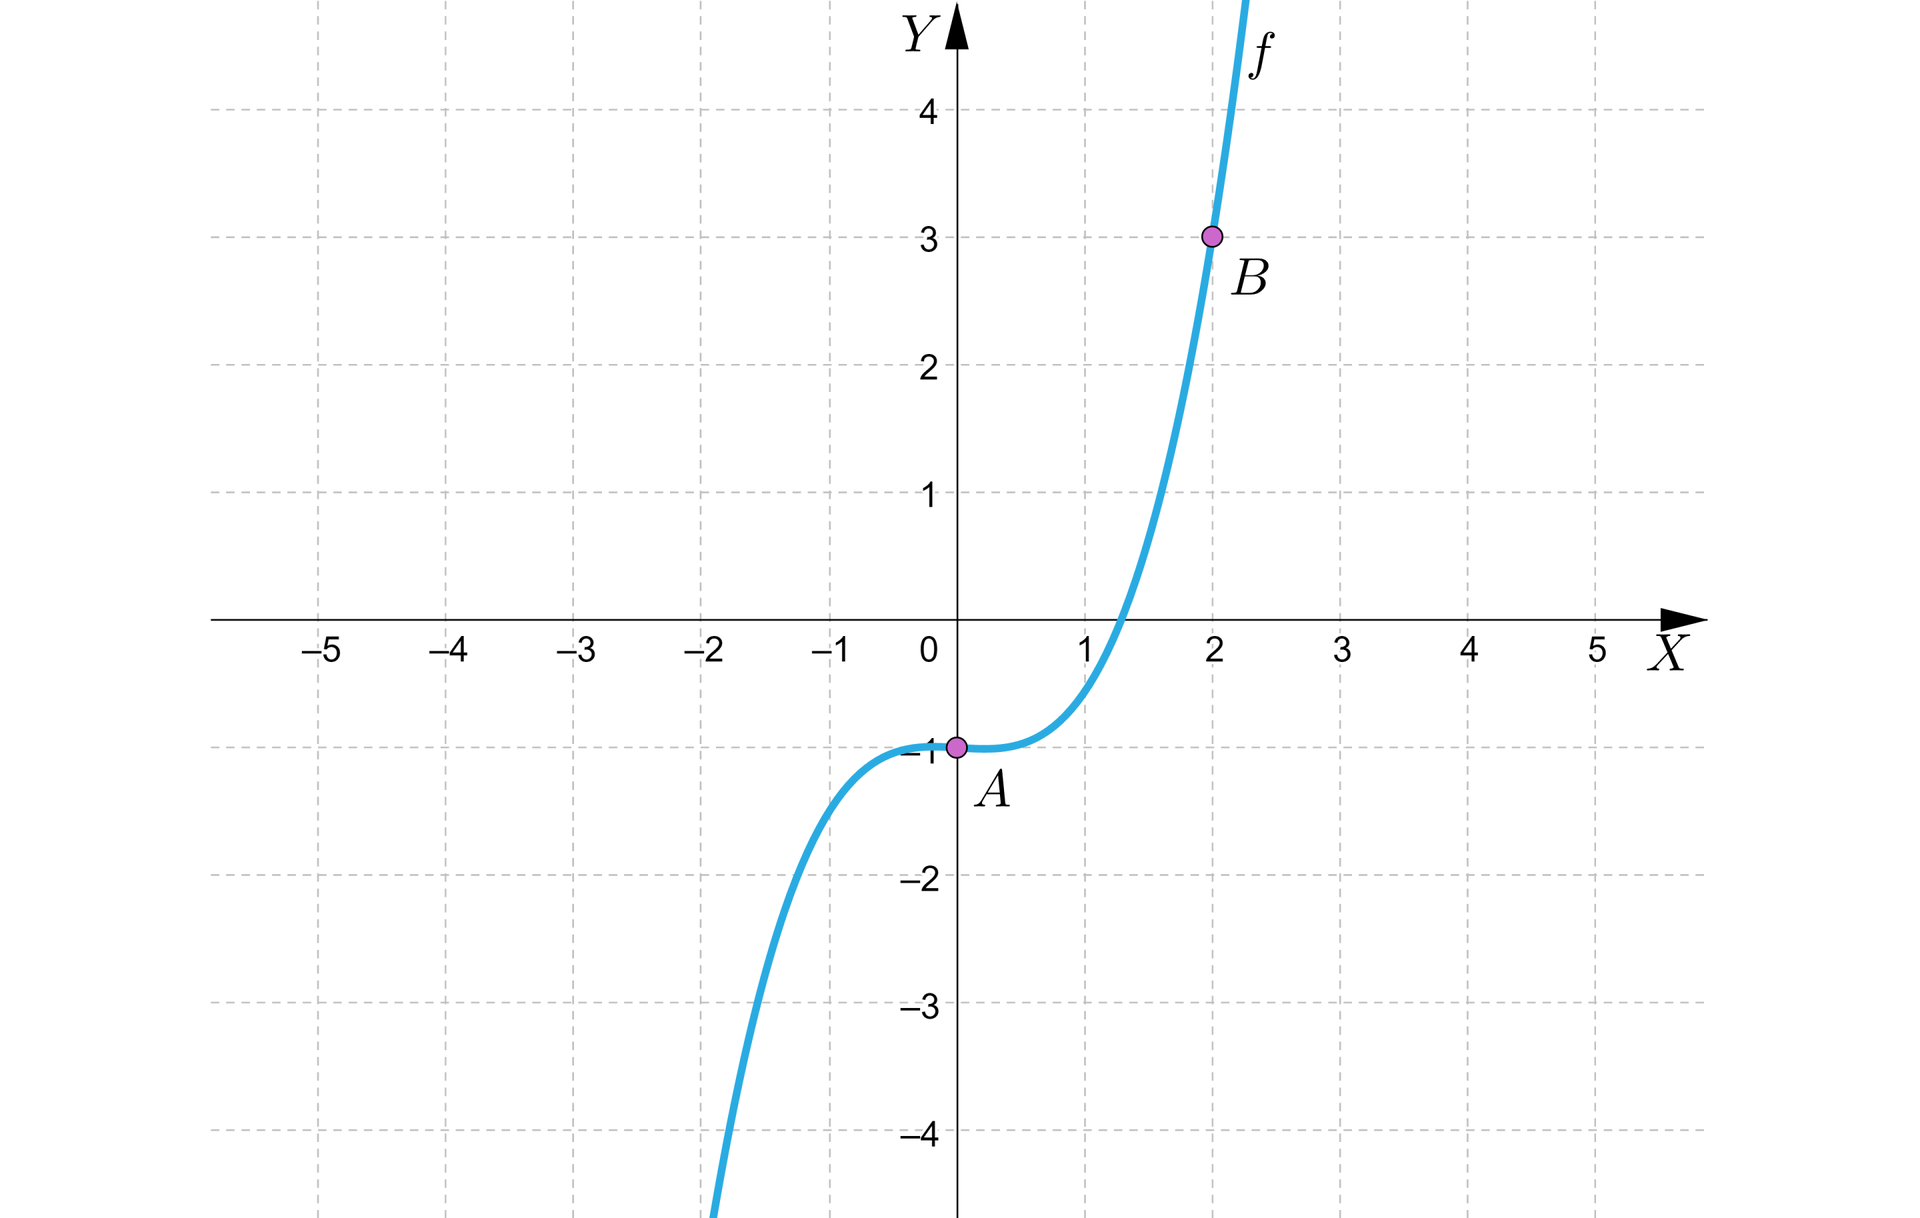 Ilustracja przedstawia układ współrzędnych z poziomą osią X od minus pięciu do pięciu oraz pionową osią Y od minus dwóch do siedmiu. Na płaszczyźnie narysowano wykres funkcji fx=x3-1. Wykres jest krzywą biegnącą niemal pionowo w górę w trzeciej  ćwiartce do punktu 0;-1,  w którym przebija  do czwartej ćwiartki, w której biegnie łukowato do punktu 1;0, gdzie przebija do pierwszej ćwiartki, w której biegnie niemal pionowo w górę. Na płaszczyźnie wyróżniono dwa punkty. Punkt  A=0;-1 oraz punkt  B=2;3.